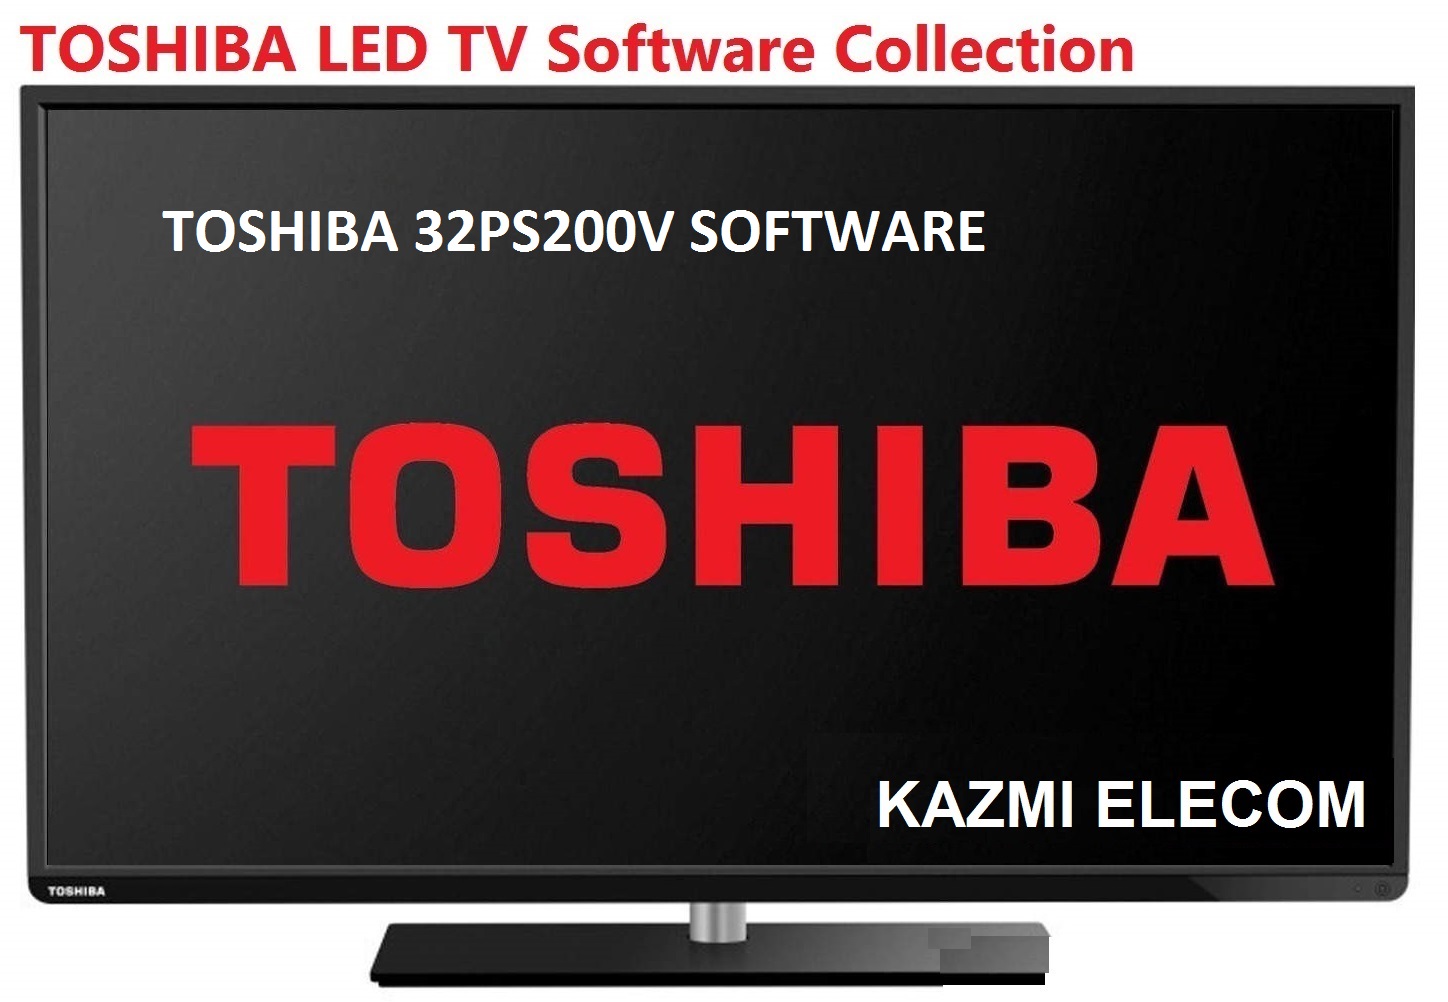 Toshiba 32Ps200V